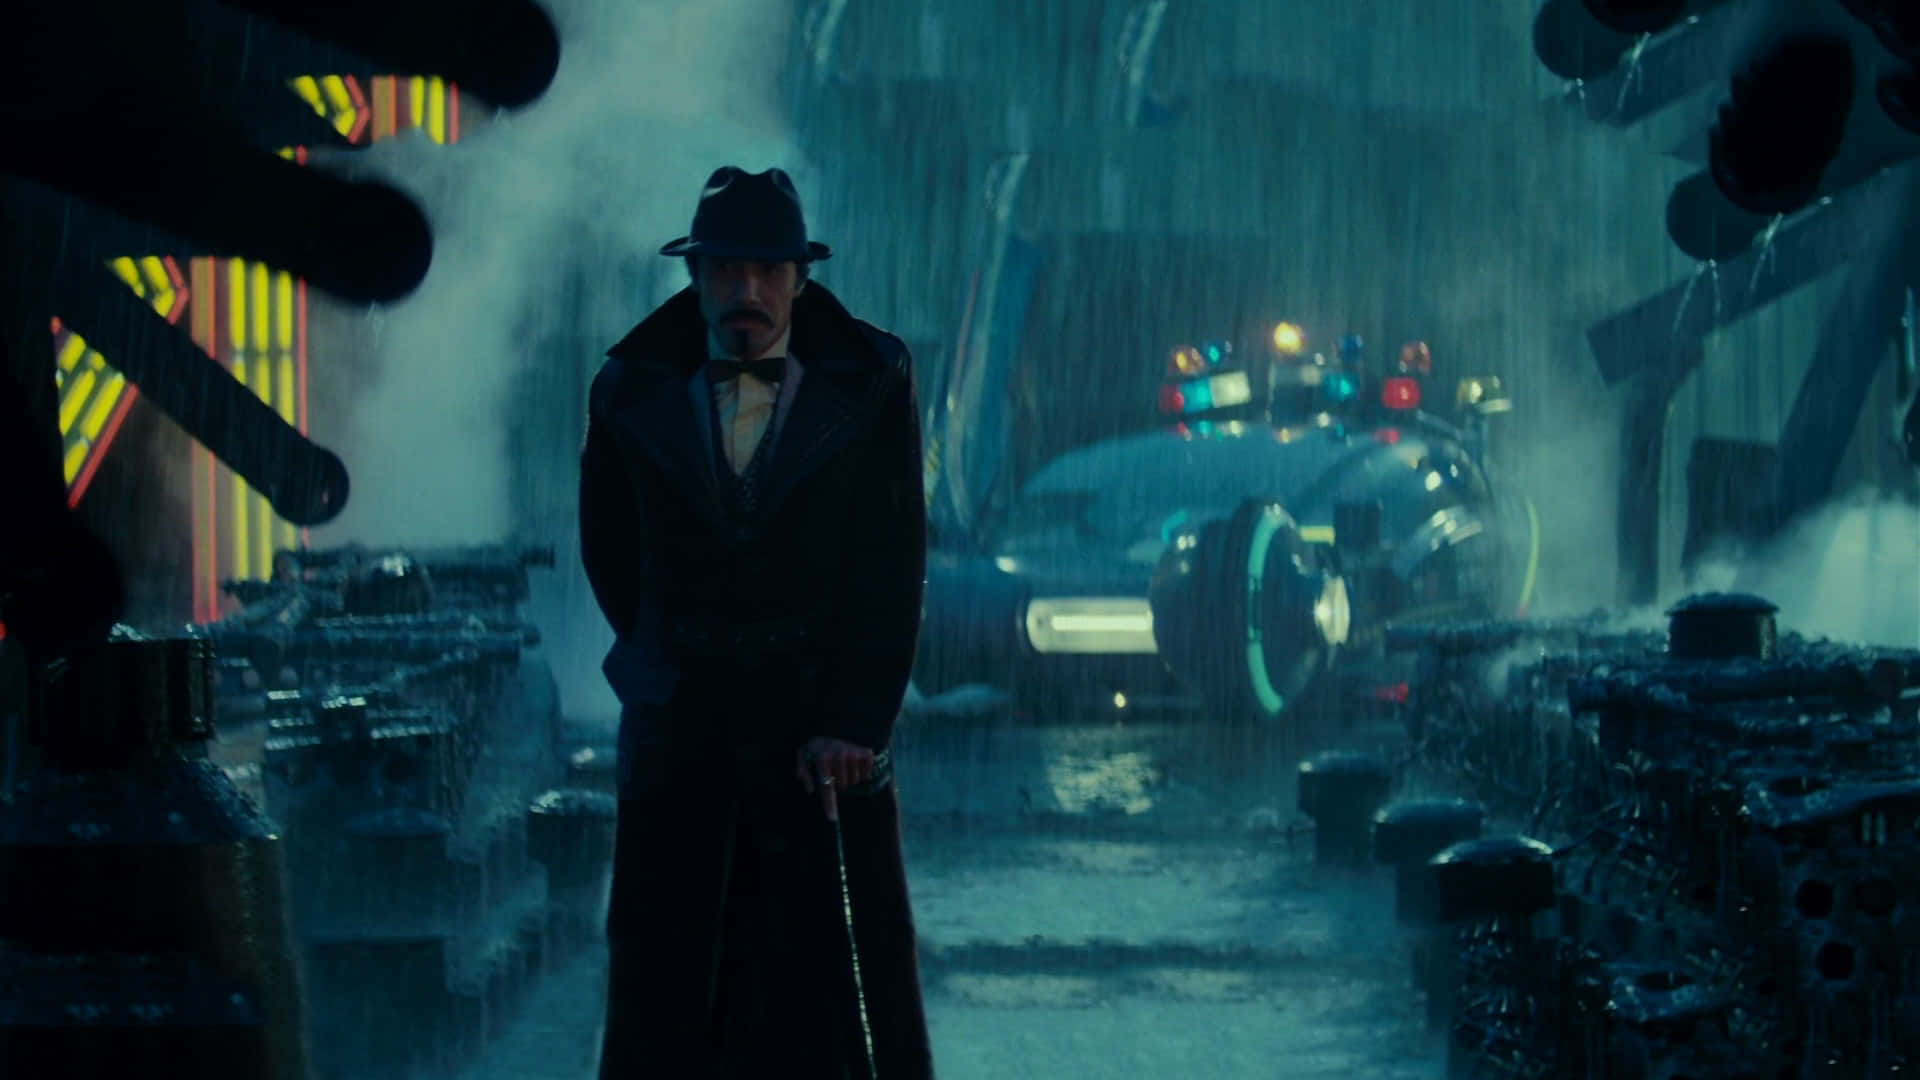 Siguetus Sueños En El Paisaje Urbano Expansivo De Blade Runner.